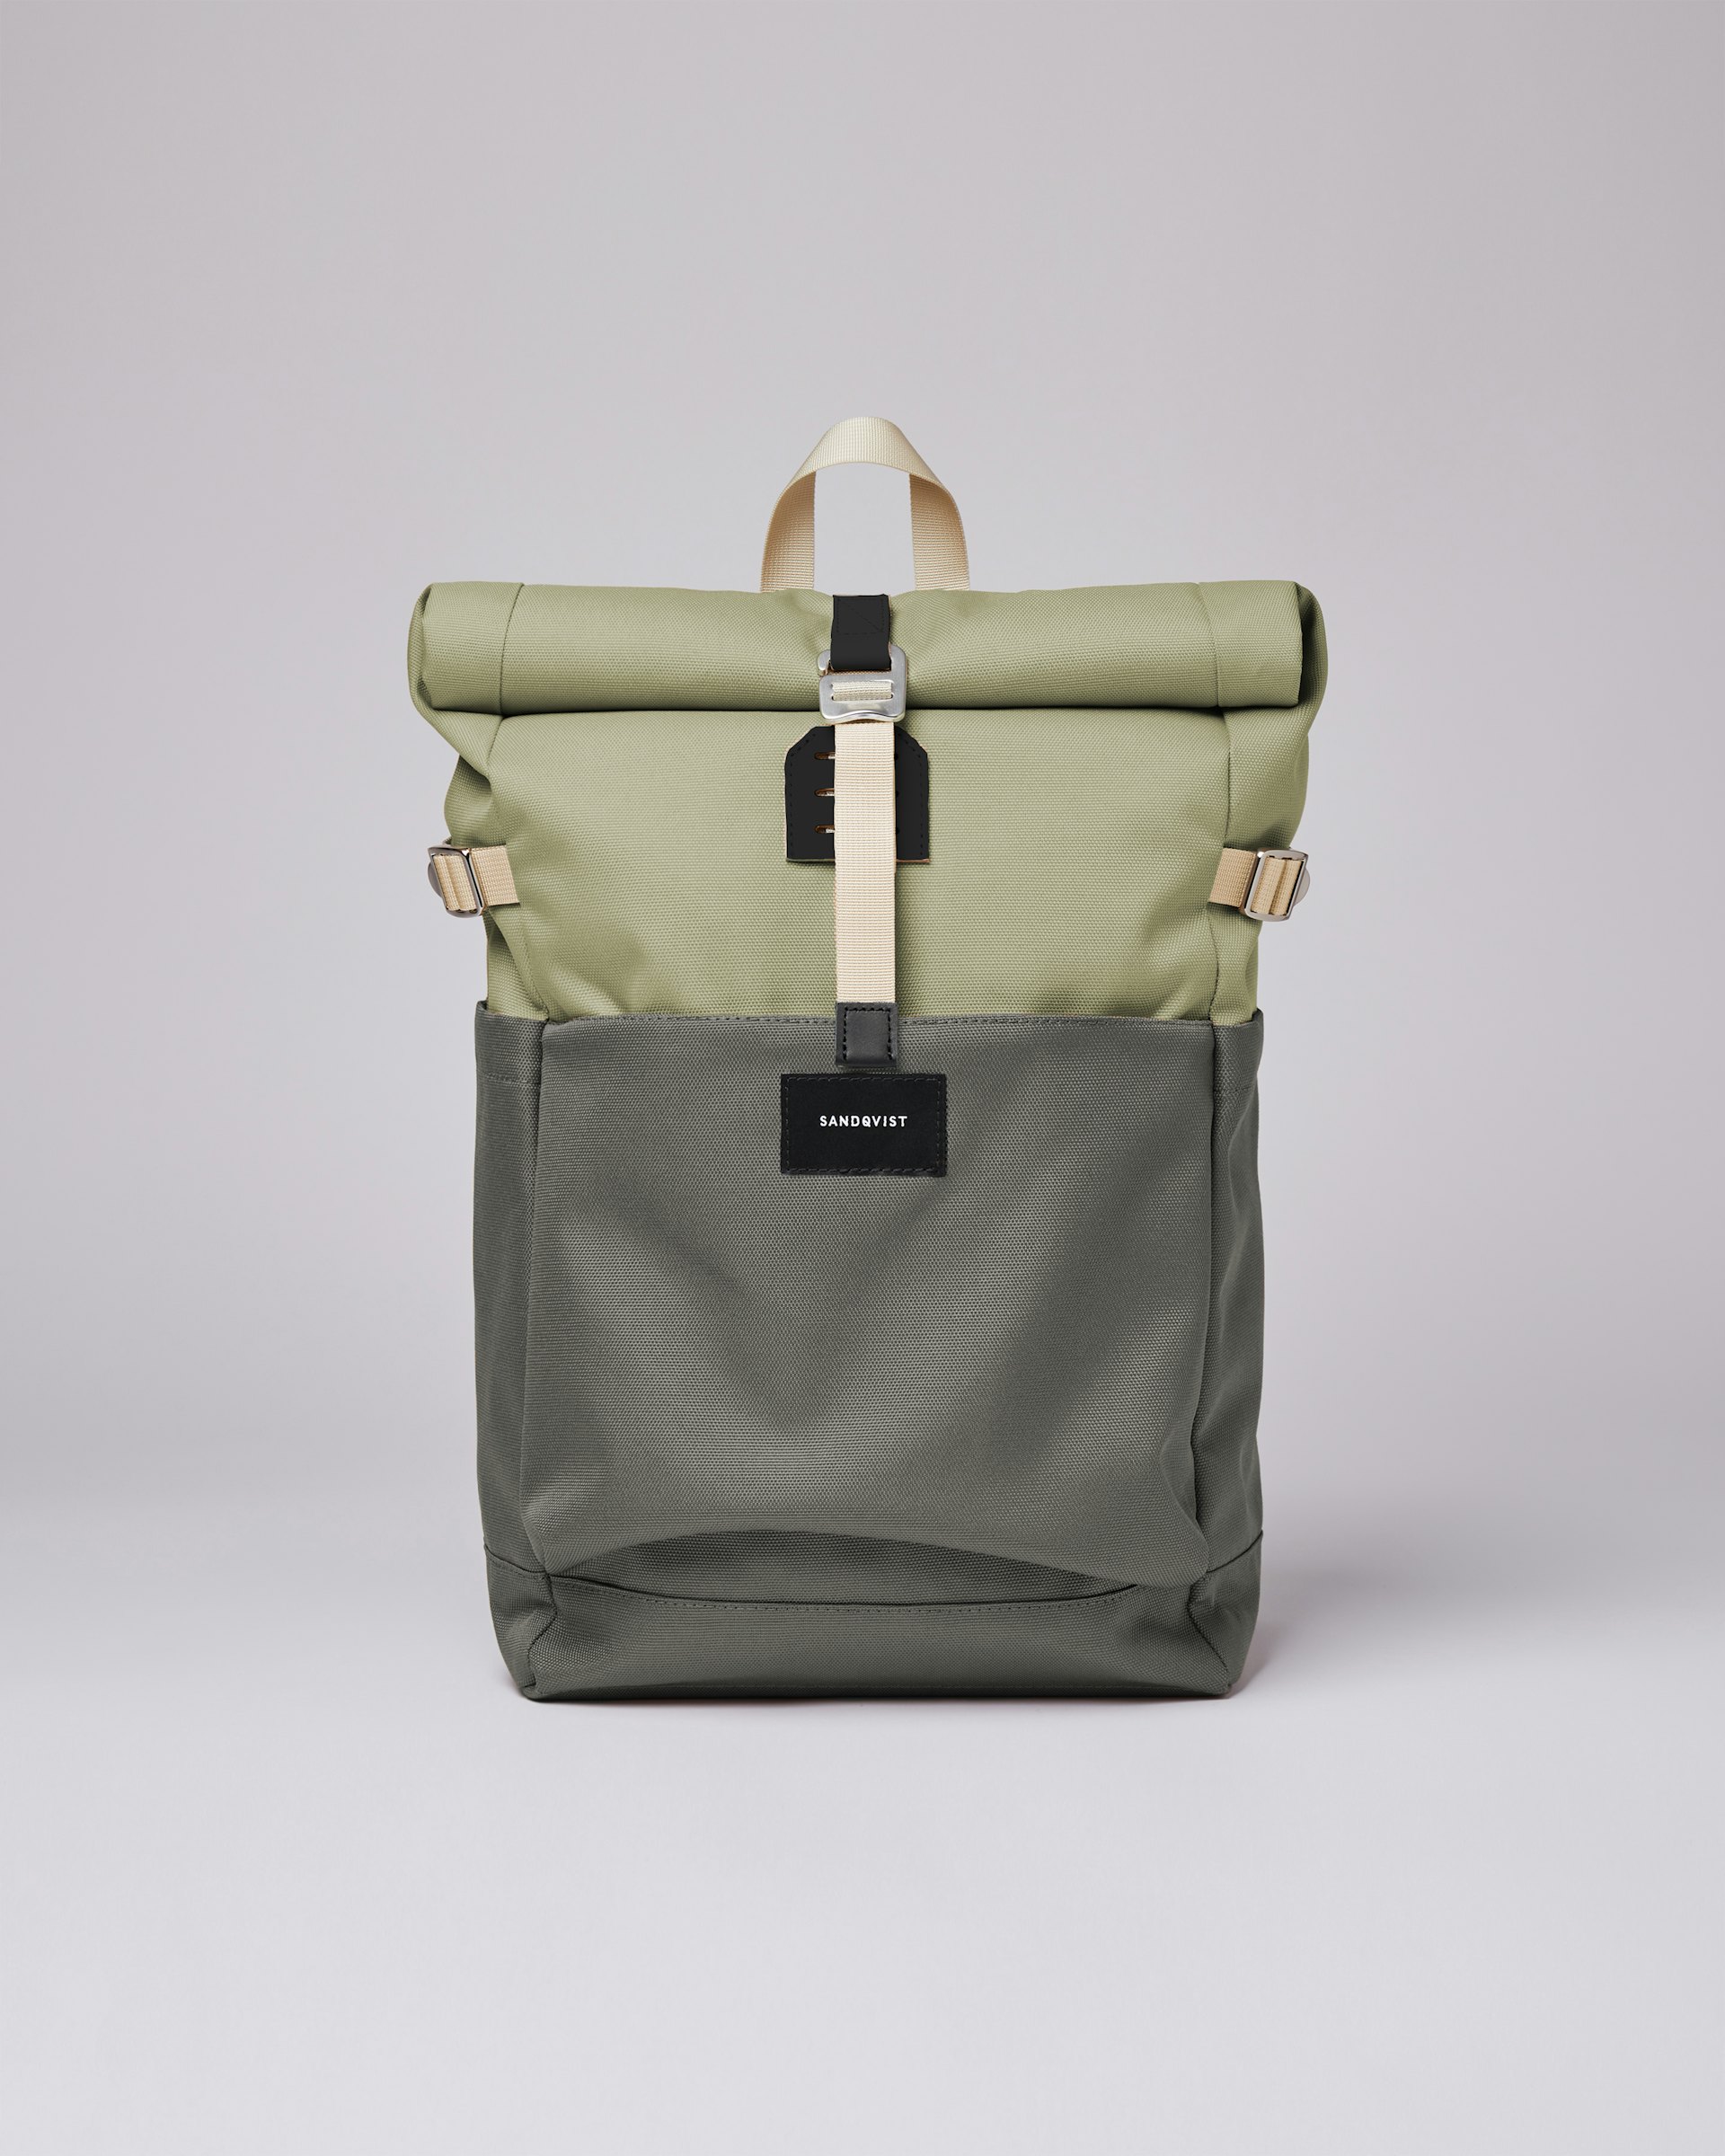 Ilon gehört zur kategorie Backpacks und ist farbig dew green